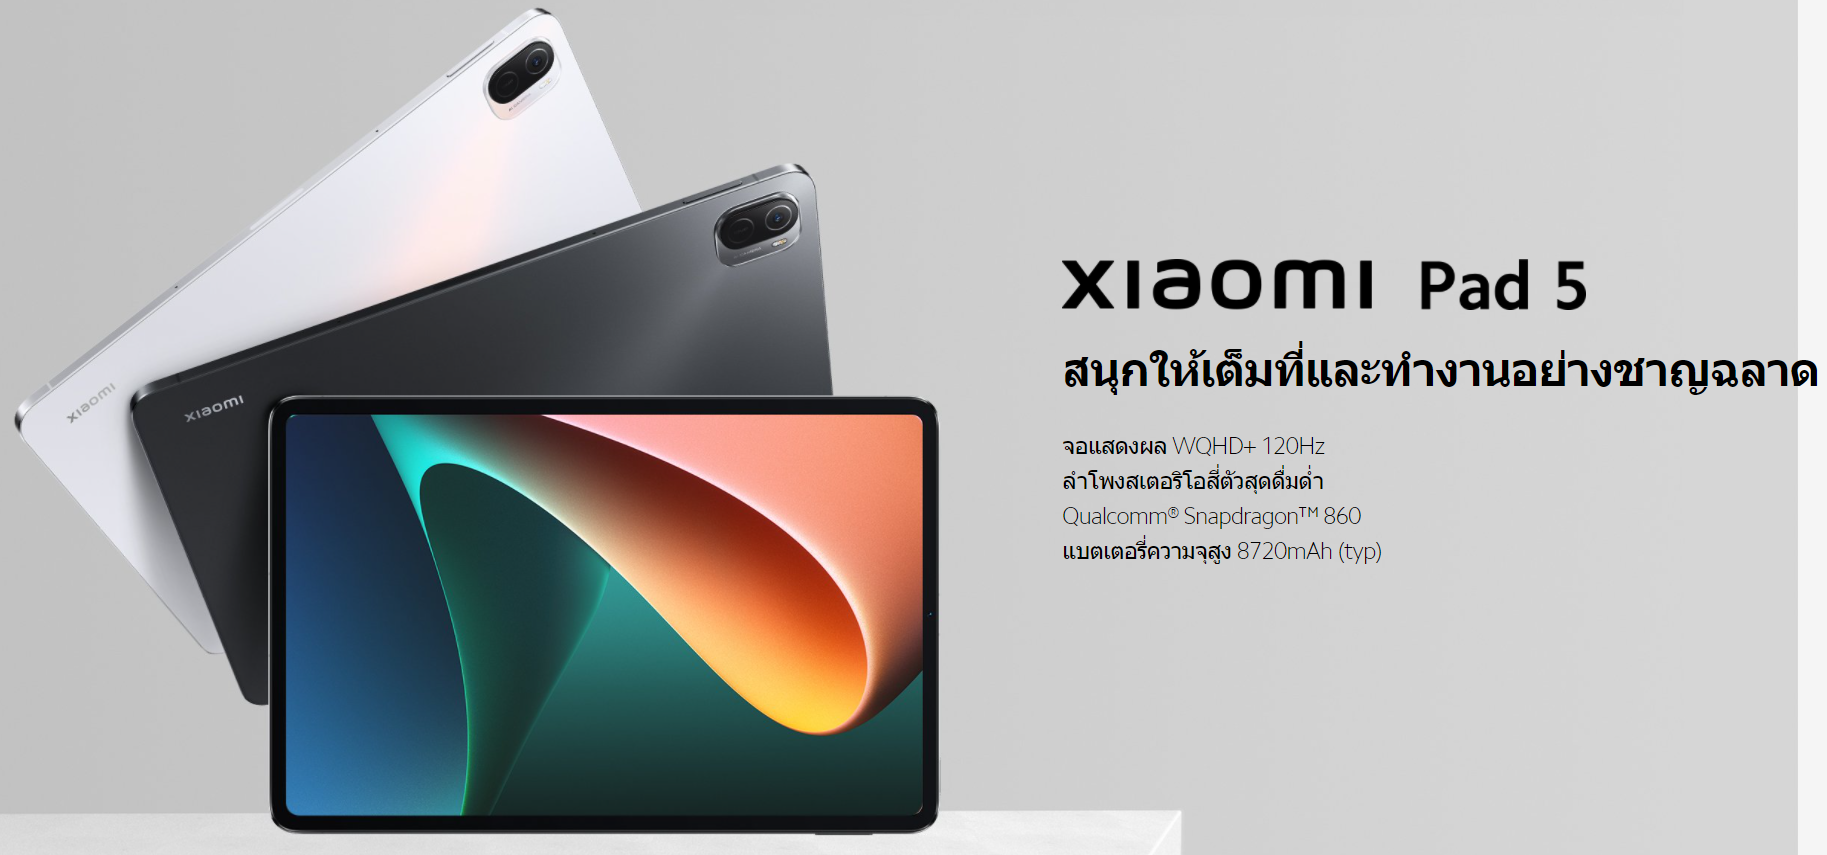 ภาพประกอบของ เครื่องศูนย์ไทย ส่งไว  Xiaomi Pad 5 Mi Pad 5  หน้าจอ11นิ้วWQHD+ 120Hz  Snapdragon 860  แบตเตอรี่8720mAh  รับประกันศูนย์ 15 เดือน